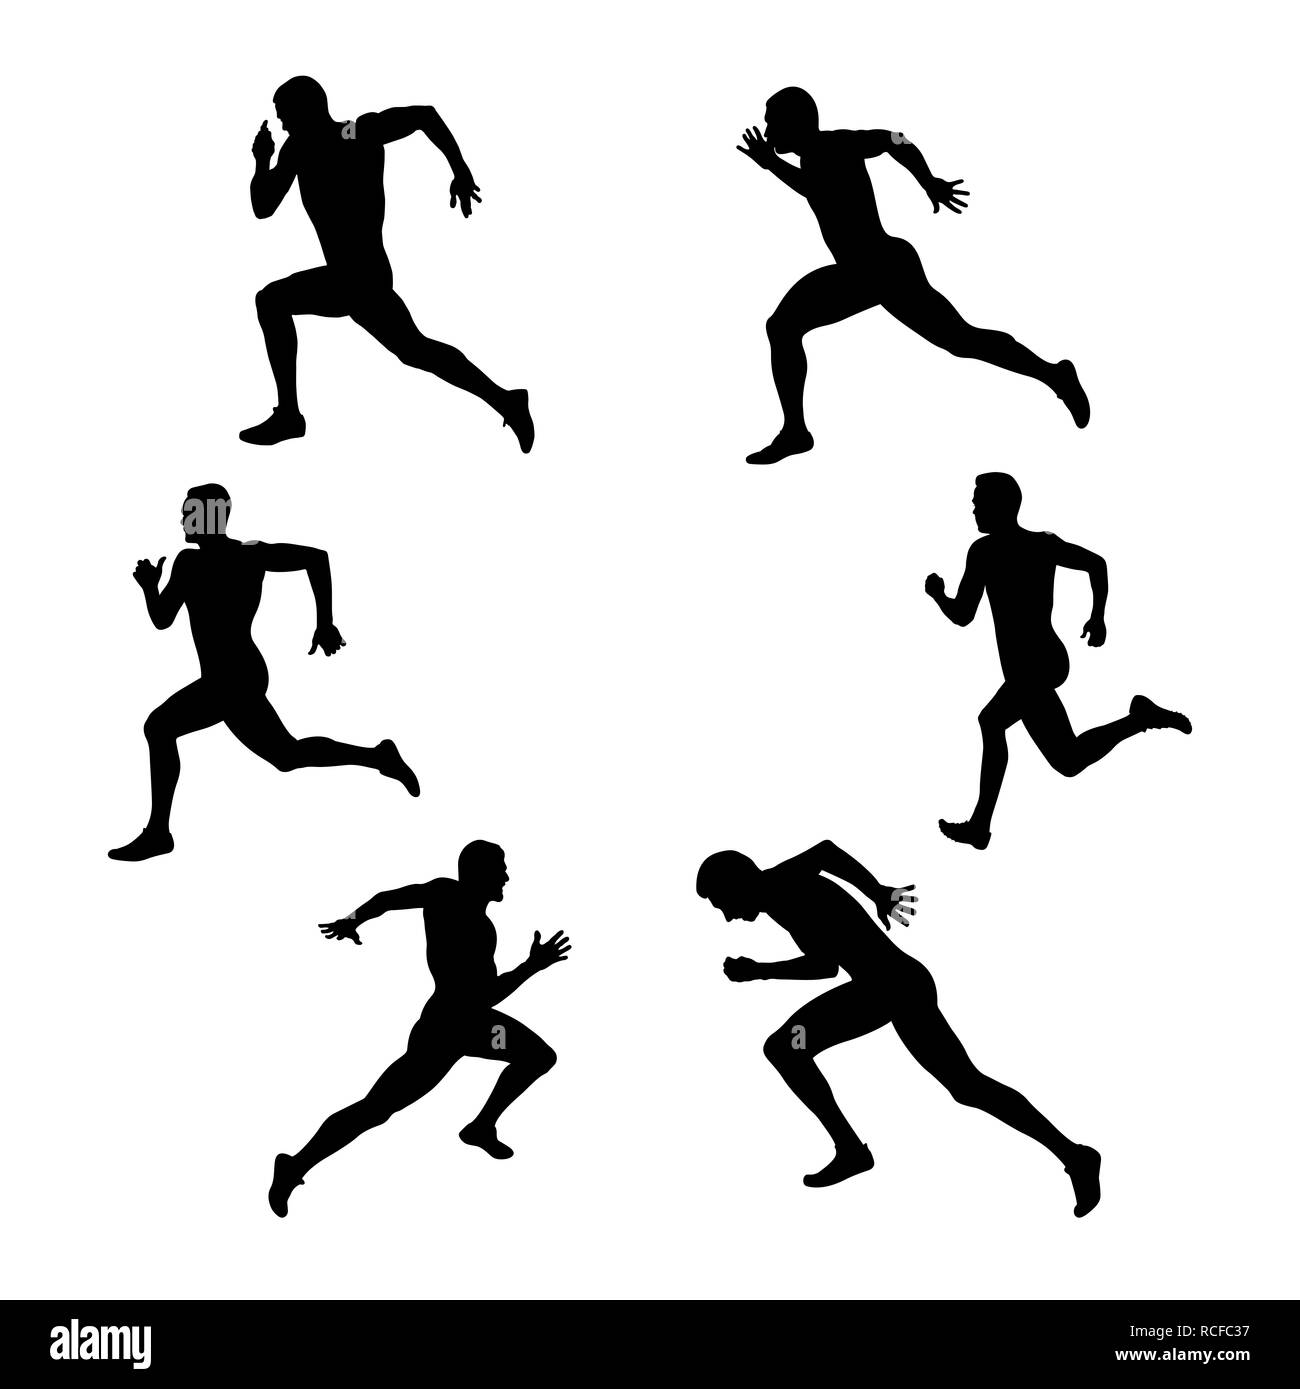 Définissez les sportifs athlétisme homme runner sprinter Banque D'Images